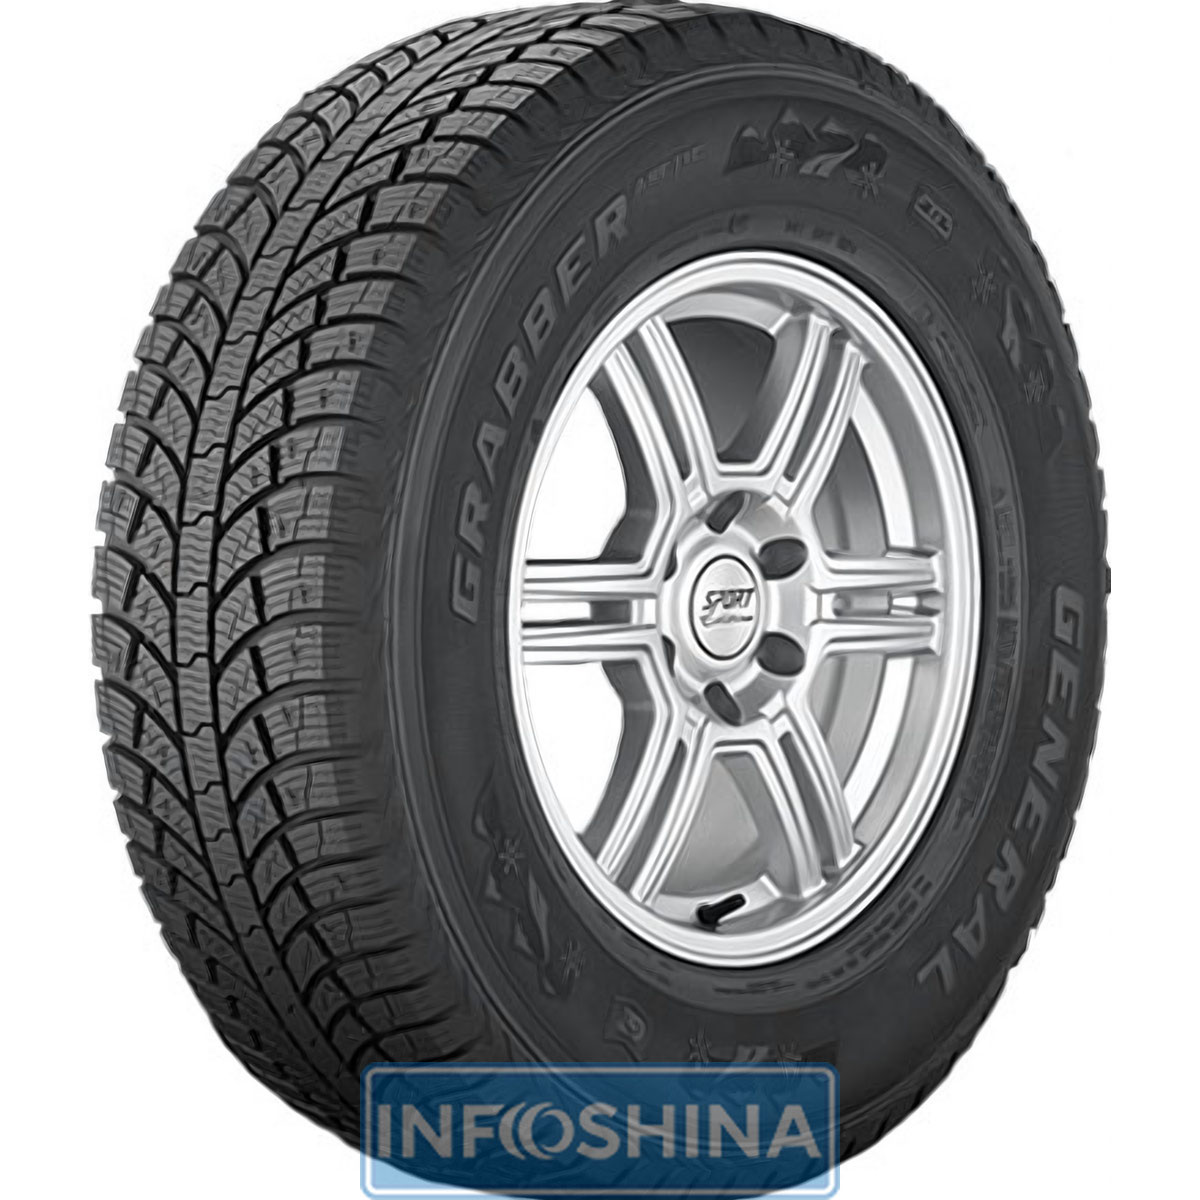 Купить шины General Tire Grabber Arctic 235/65 R17 108T XL (под шип)